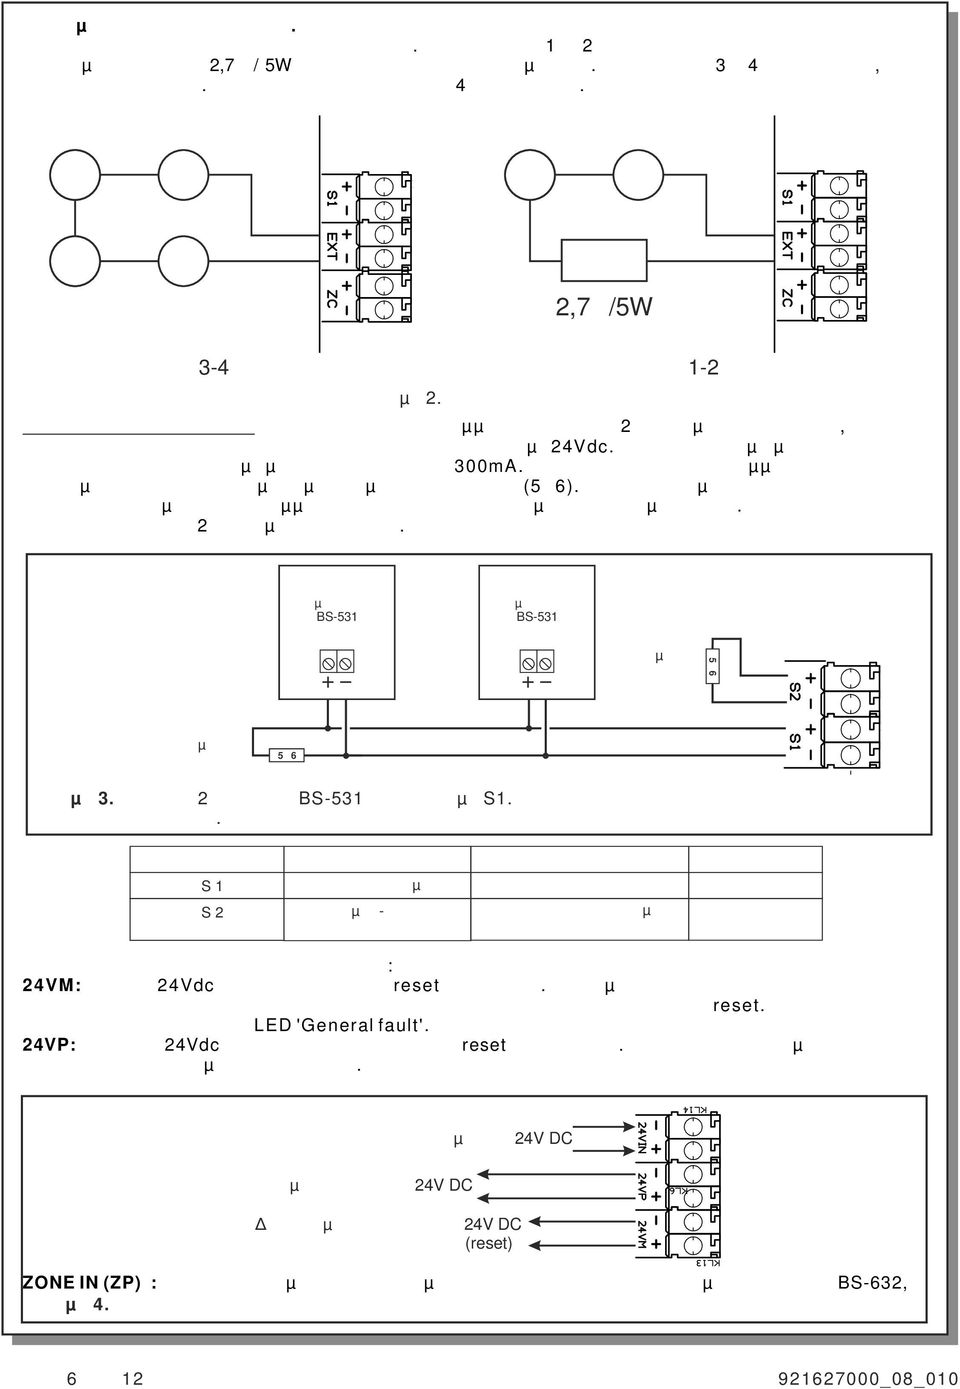 Τυπική σύνδεση Συνδέσεις σειρήνων Ο πίνακας διαθέτει κλέµµες για σύνδεση 2 κυκλωµάτων σειρηνών, κουδουνιών ή άλλων συσκευών εξόδου που λειτουργούν µε 24Vdc.